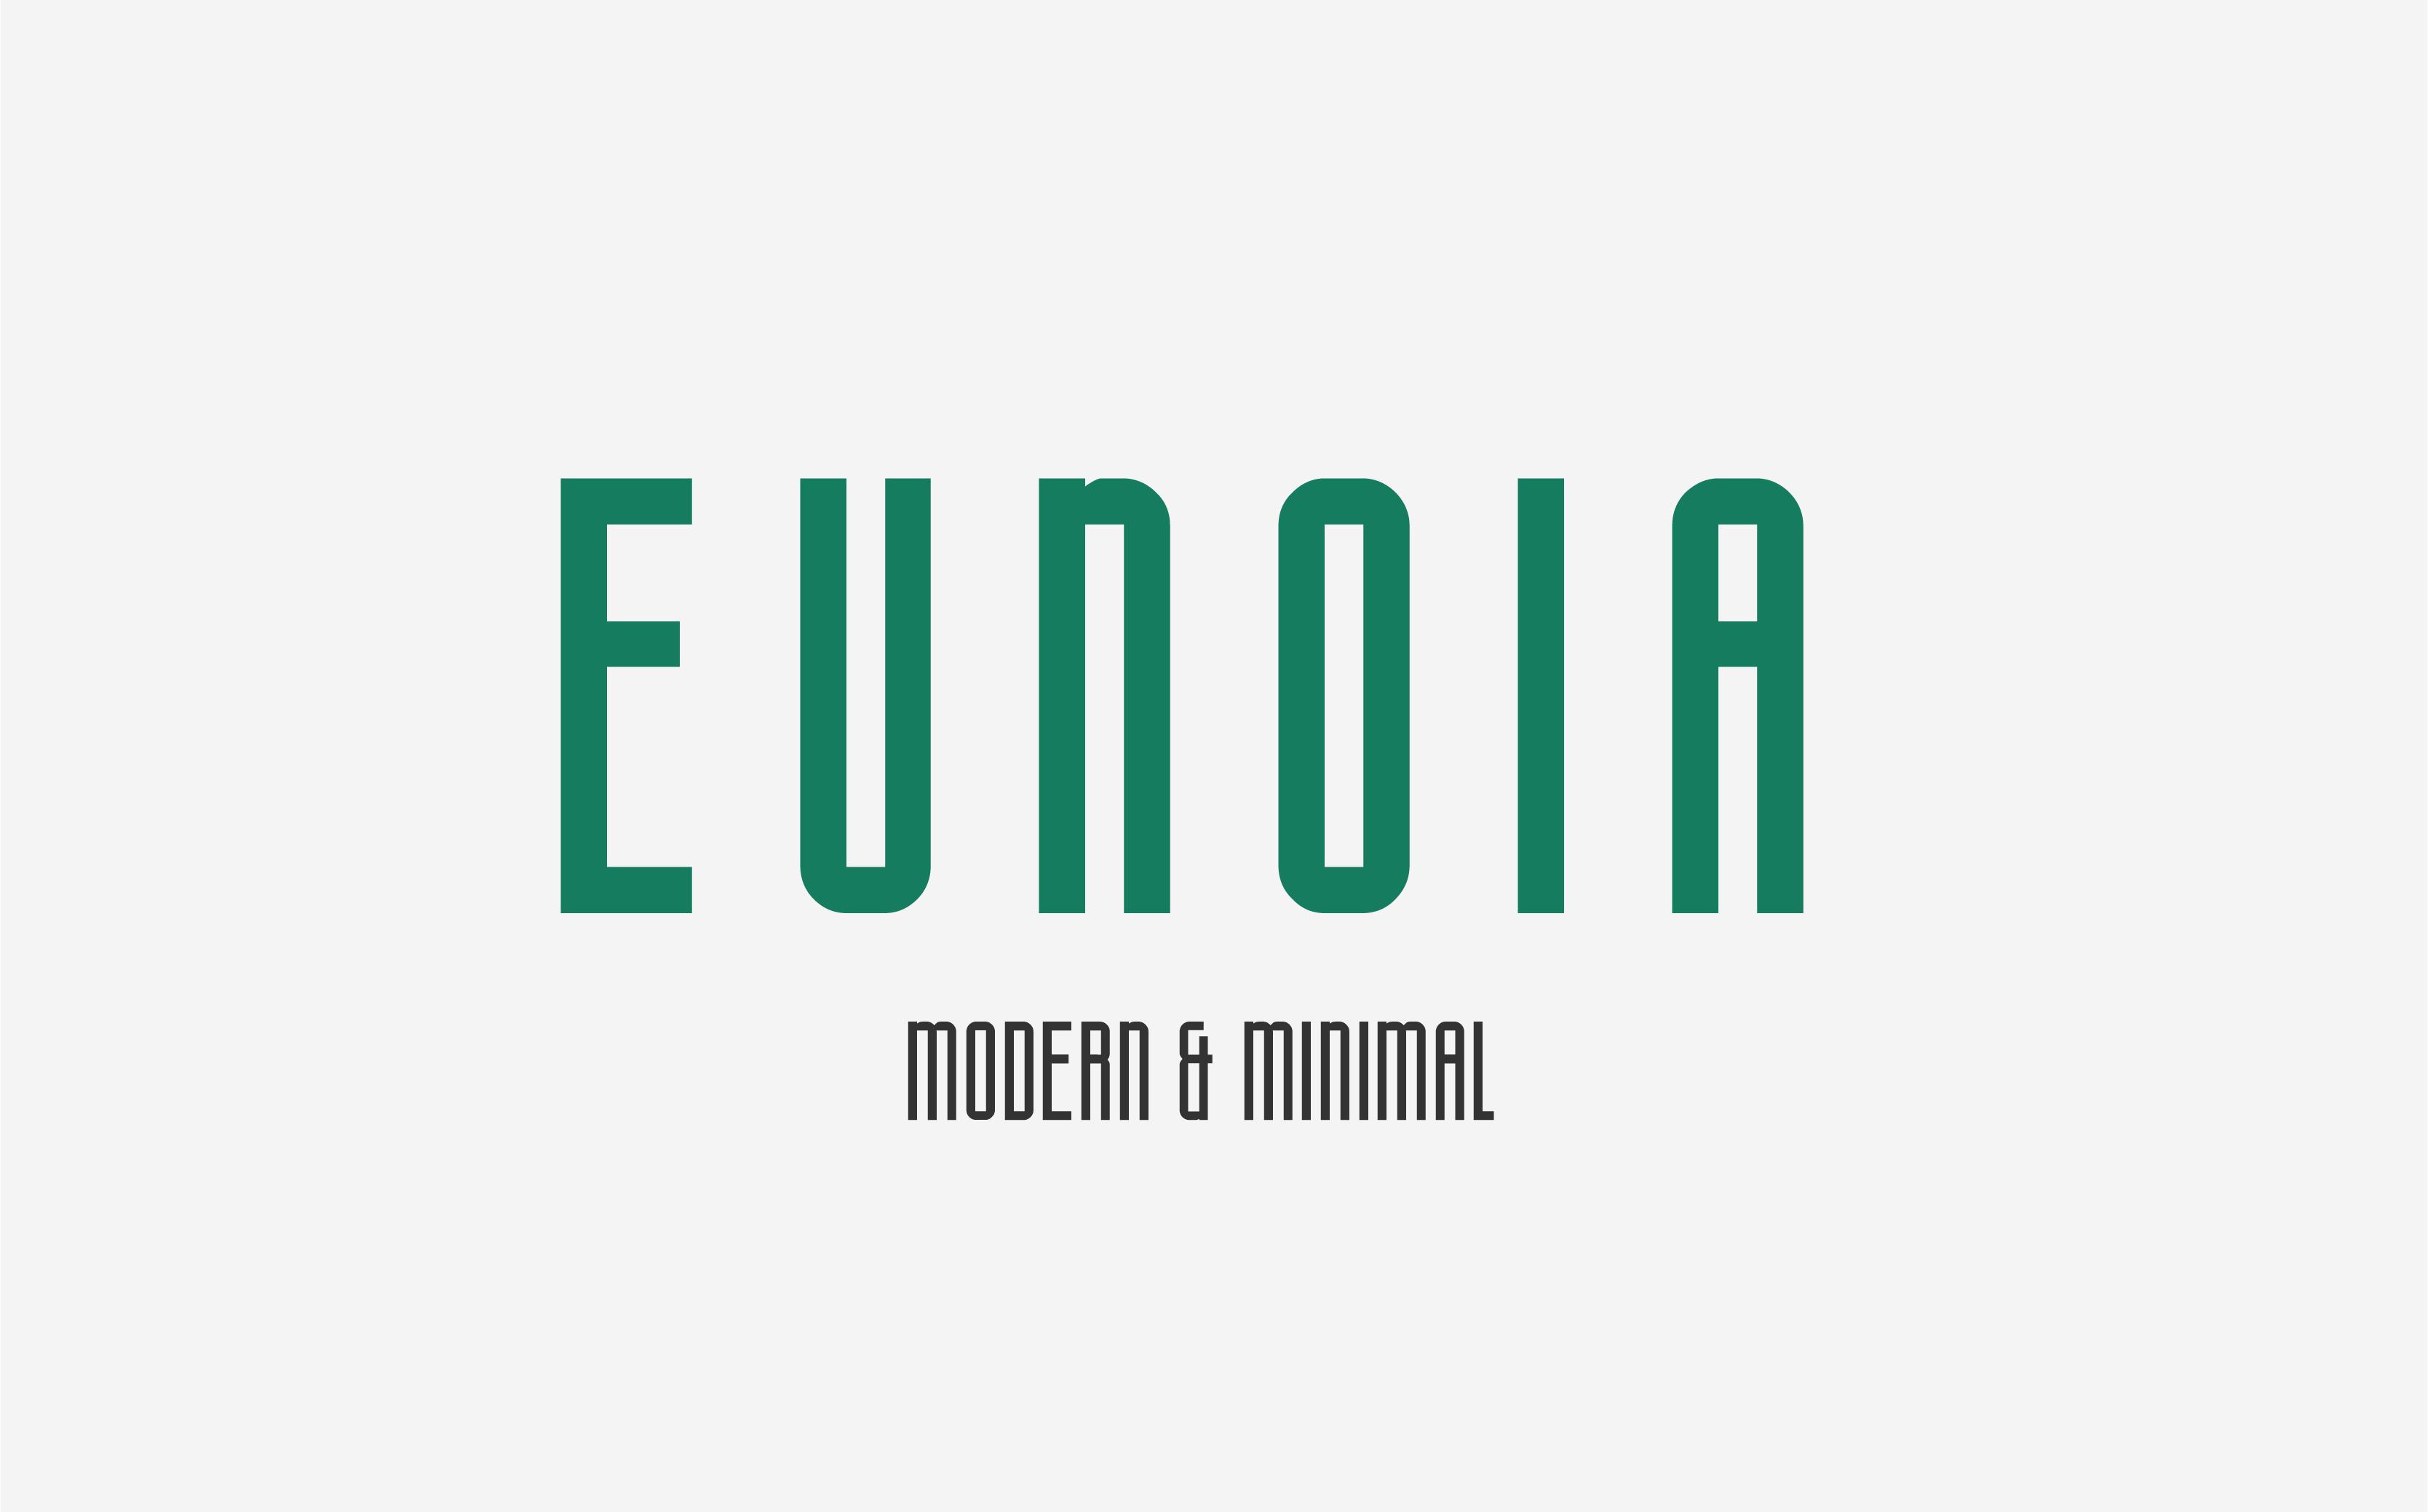 Eunoia Font